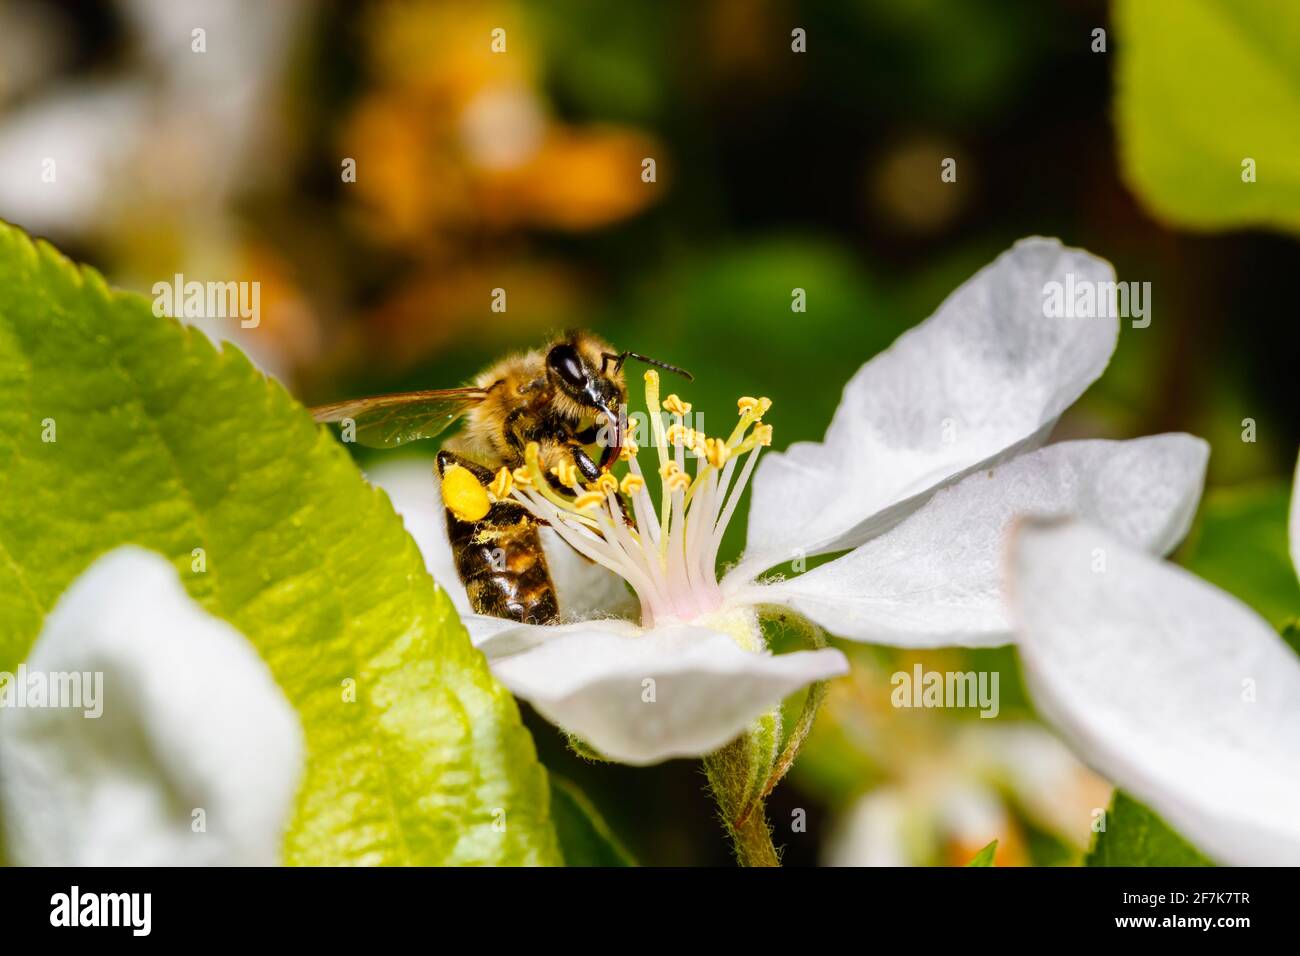 Un'ape di miele, Apis mellifera, che raccoglie nettare e polline dagli stampini della fioritura bianca dell'albero della mela in primavera, Surrey, Inghilterra sud-orientale, Regno Unito Foto Stock